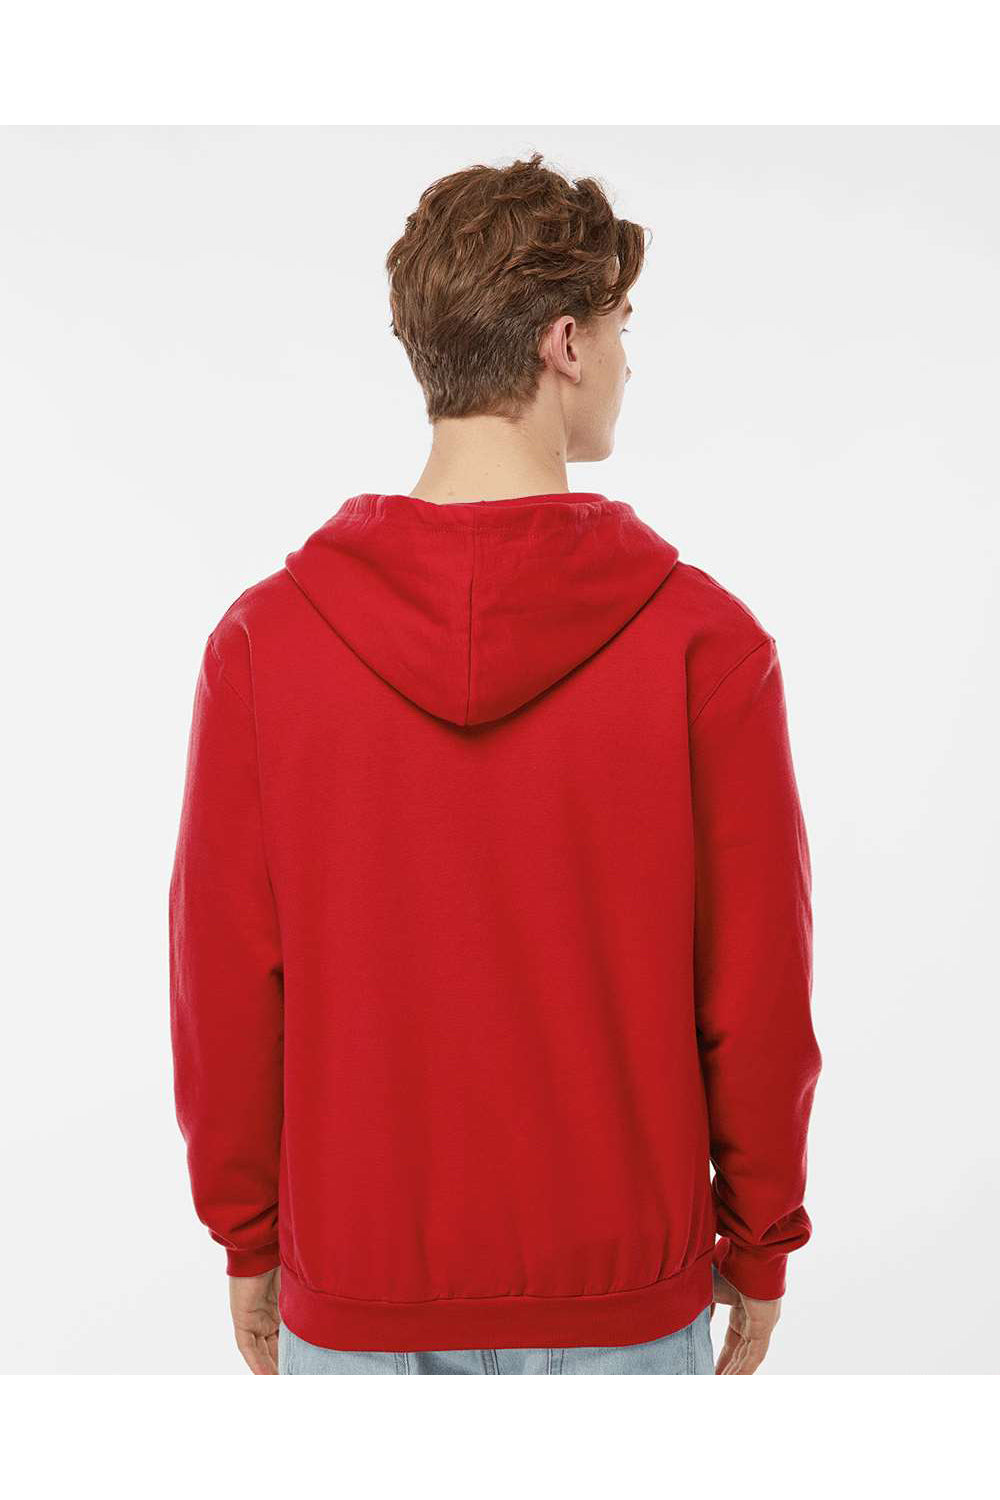 Tultex 331 Mens Full Zip Hooded Sweatshirt Hoodie Red Model Back